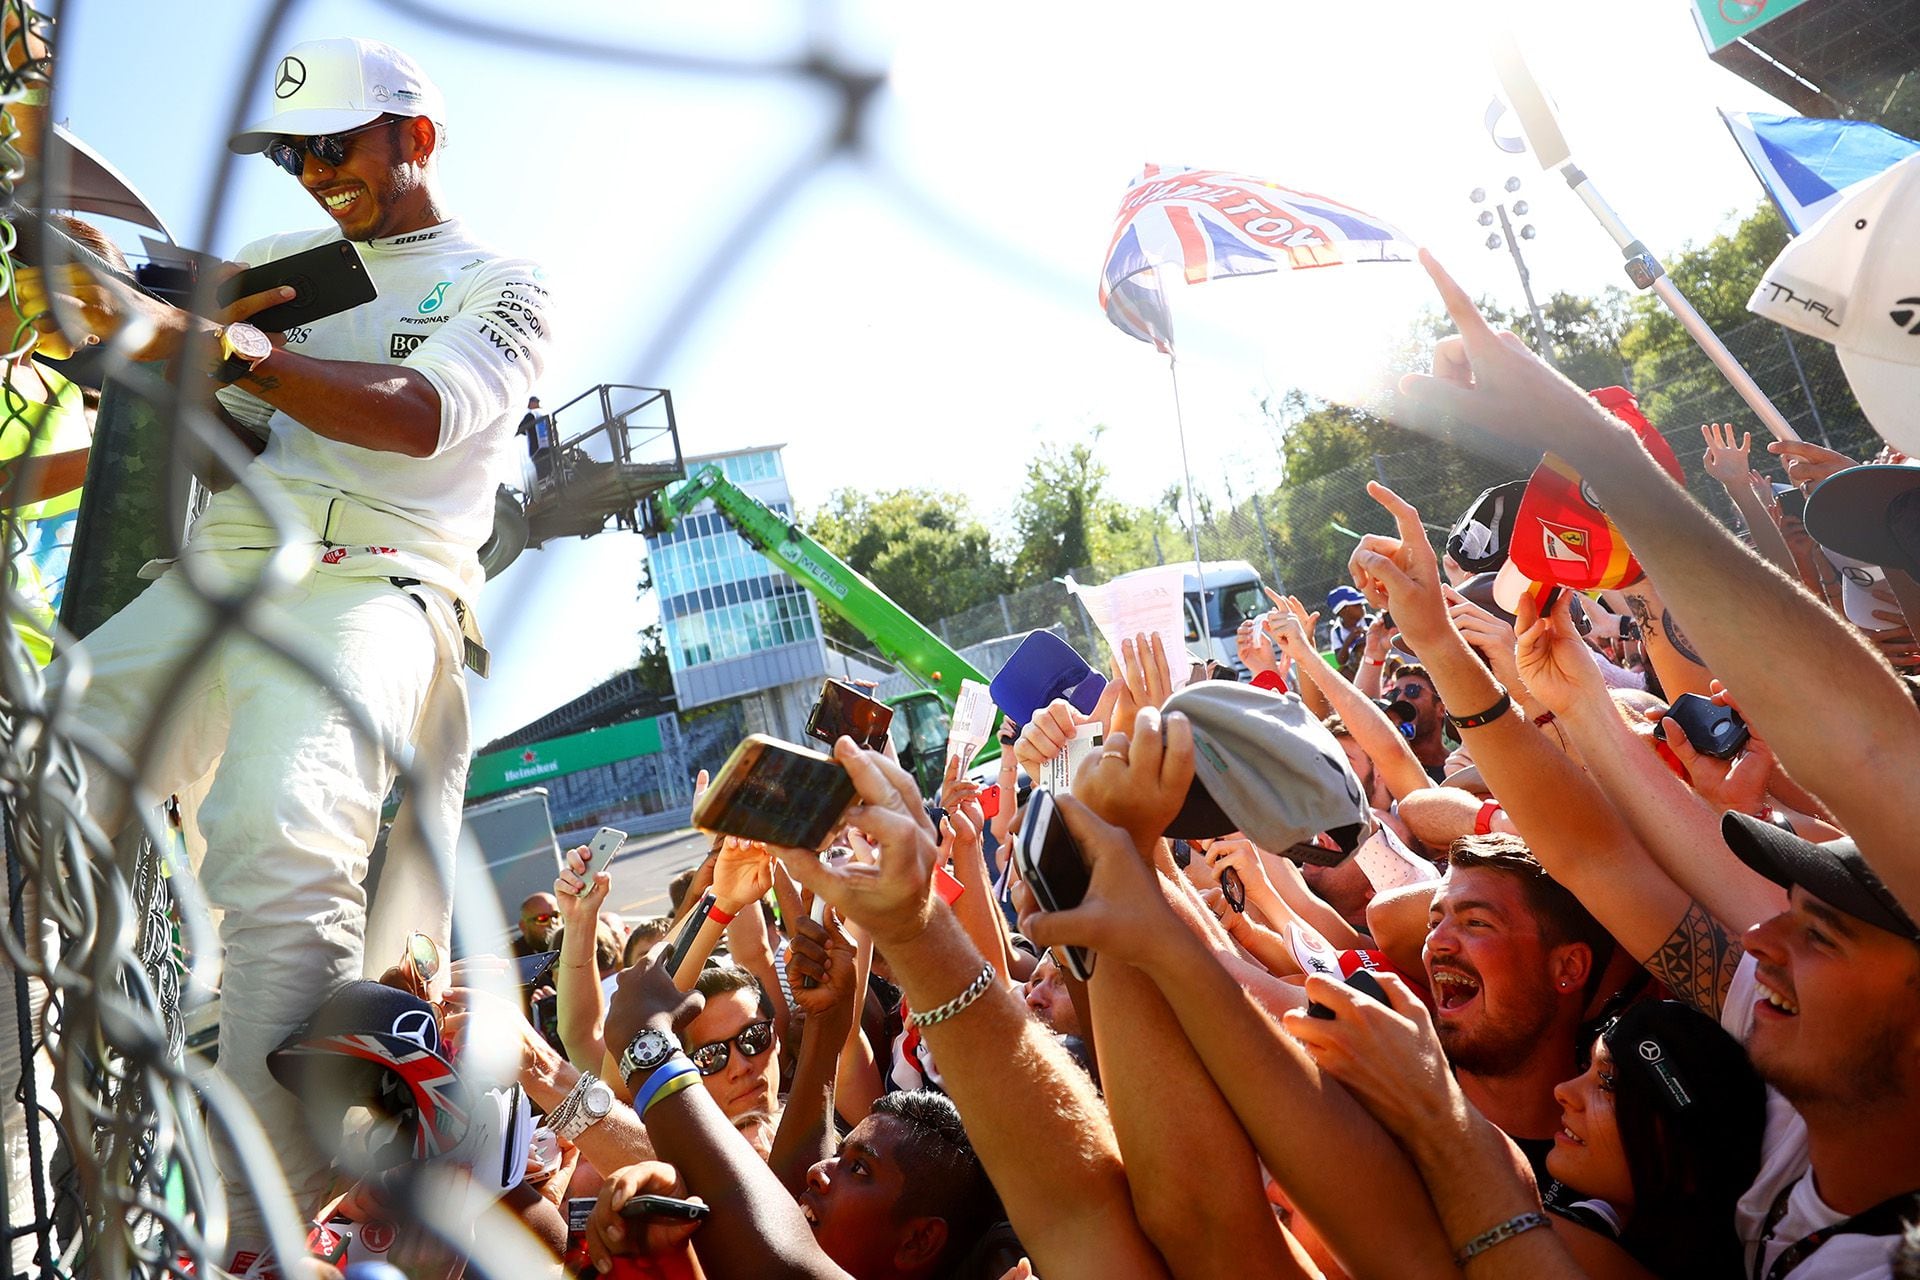 Lewis Hamilton trepando el alambrado de los boxes de Monza para llegar al podio y detrás una multitud. En su momento no fue querido por ganarle siempre a Ferrari, pero por su actitud dentro y fuera de la pista se convertirá en ídolo de los tifosis (Photo by Dan Istitene/Getty Images)